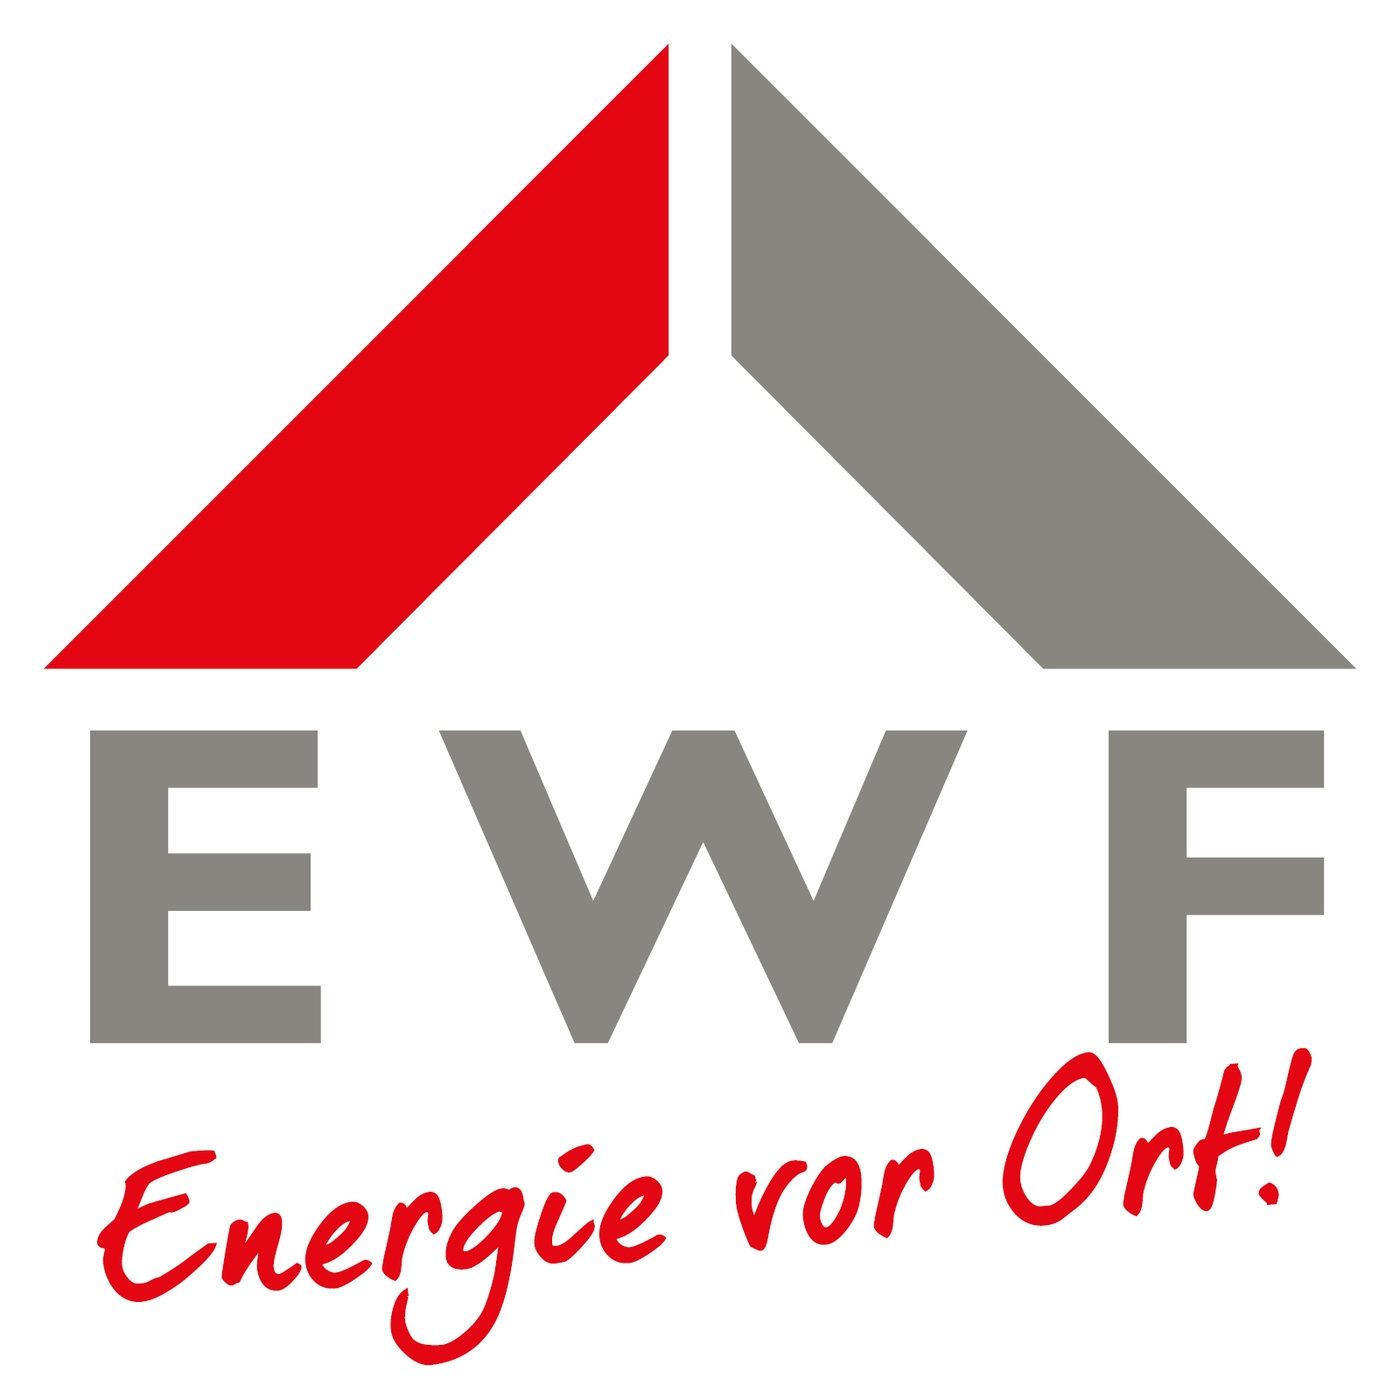 EWF - Energie vor Ort!